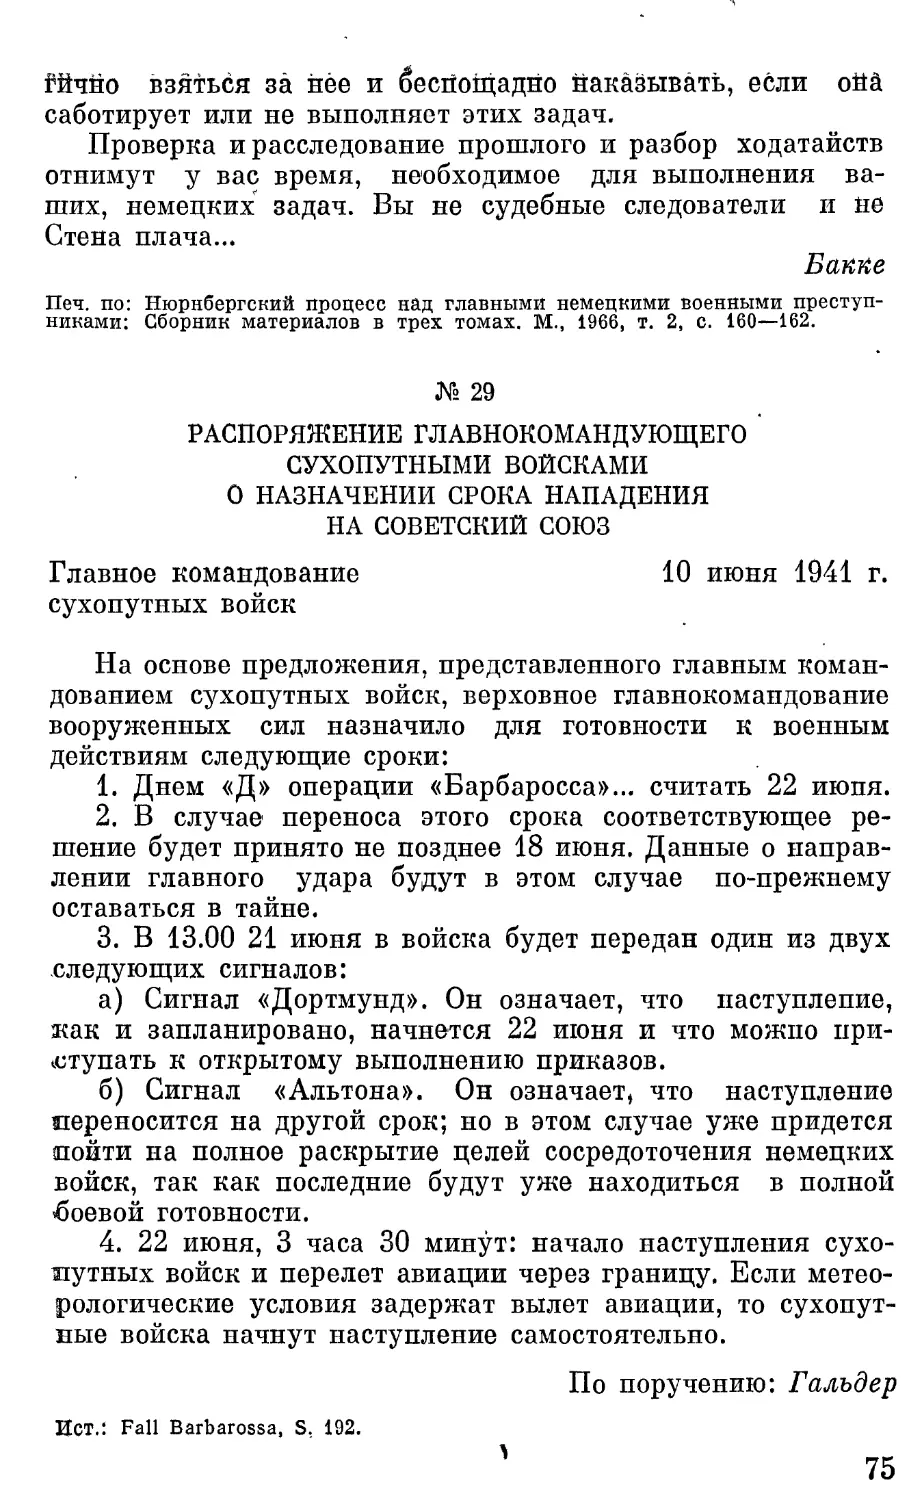 Распоряжение главнокомандующего сухопутными войсками о назначении срока нападения на Советский Союз.